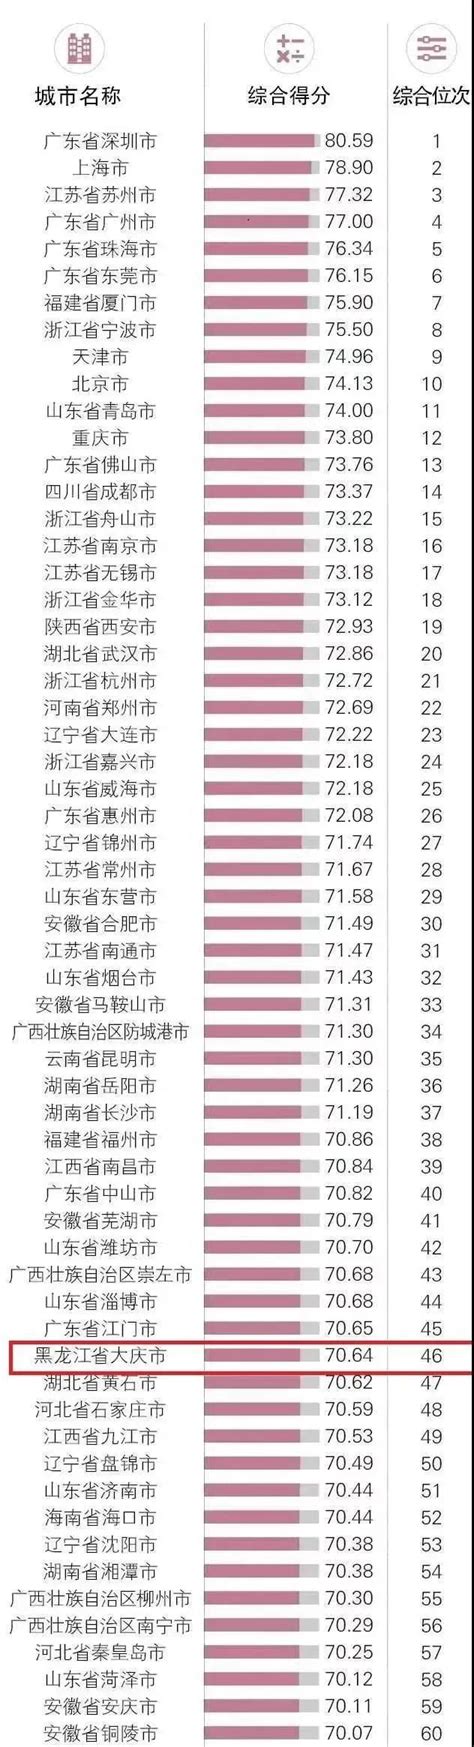 中国零售业排行榜_2017年零售业排名企业_中国排行网